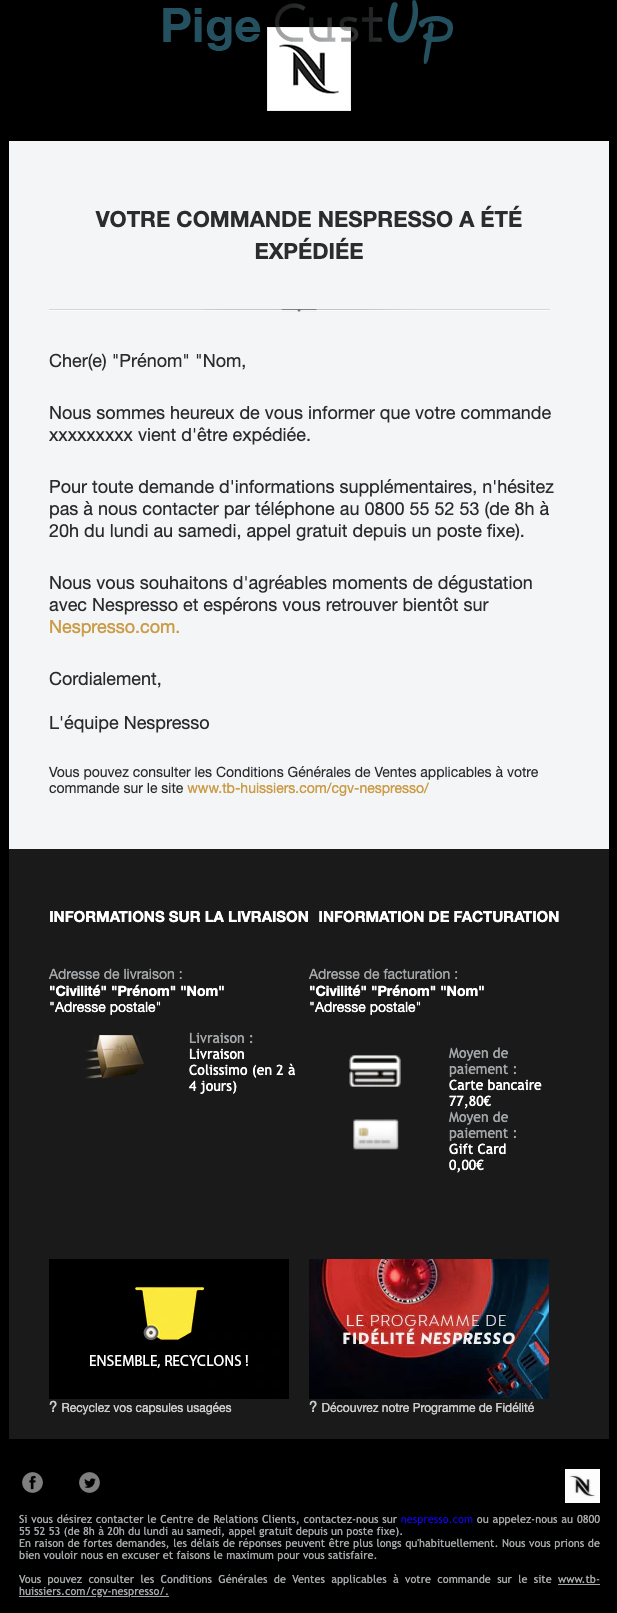 Exemple de Type de media  e-mailing - Nespresso - Transactionnels - Suivi de commande Expédition / Livraison